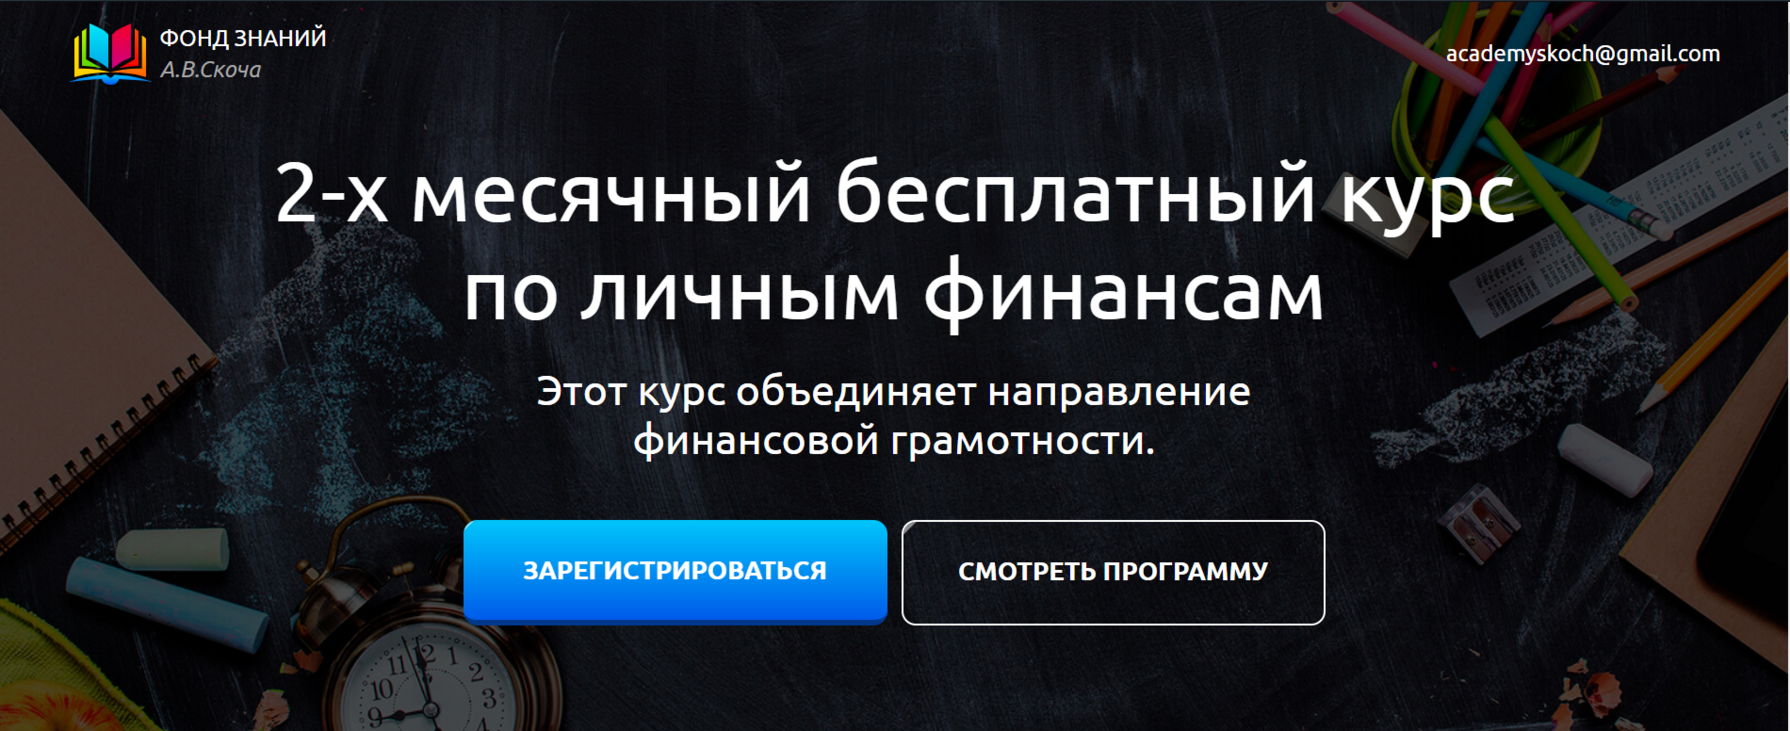 Белгородцы могут записаться на бесплатные курсы по финансовой грамотности 